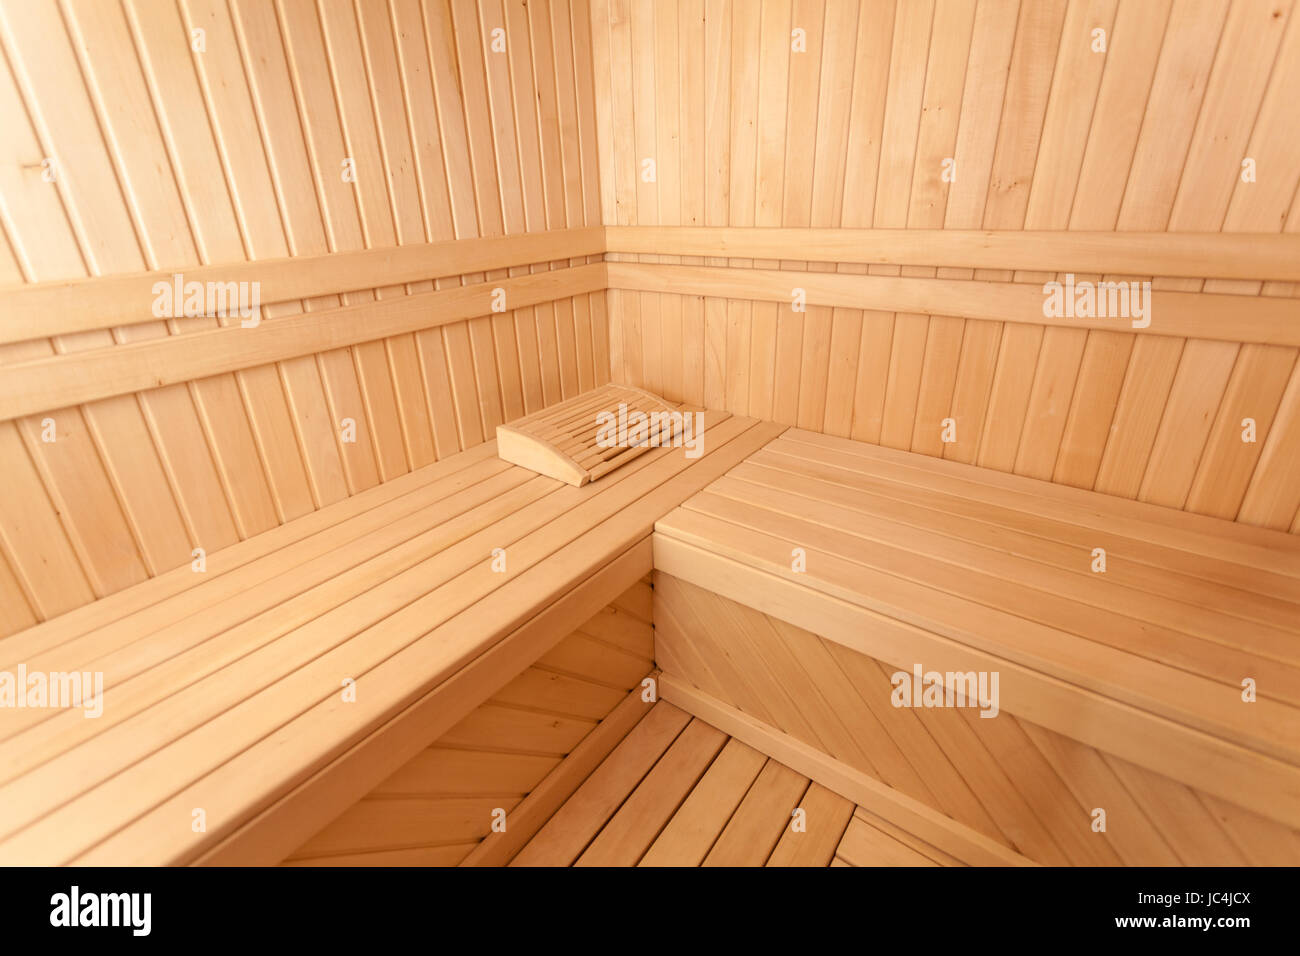 https://c8.alamy.com/comp/JC4JCX/wooden-scandinavian-sauna-room-JC4JCX.jpg